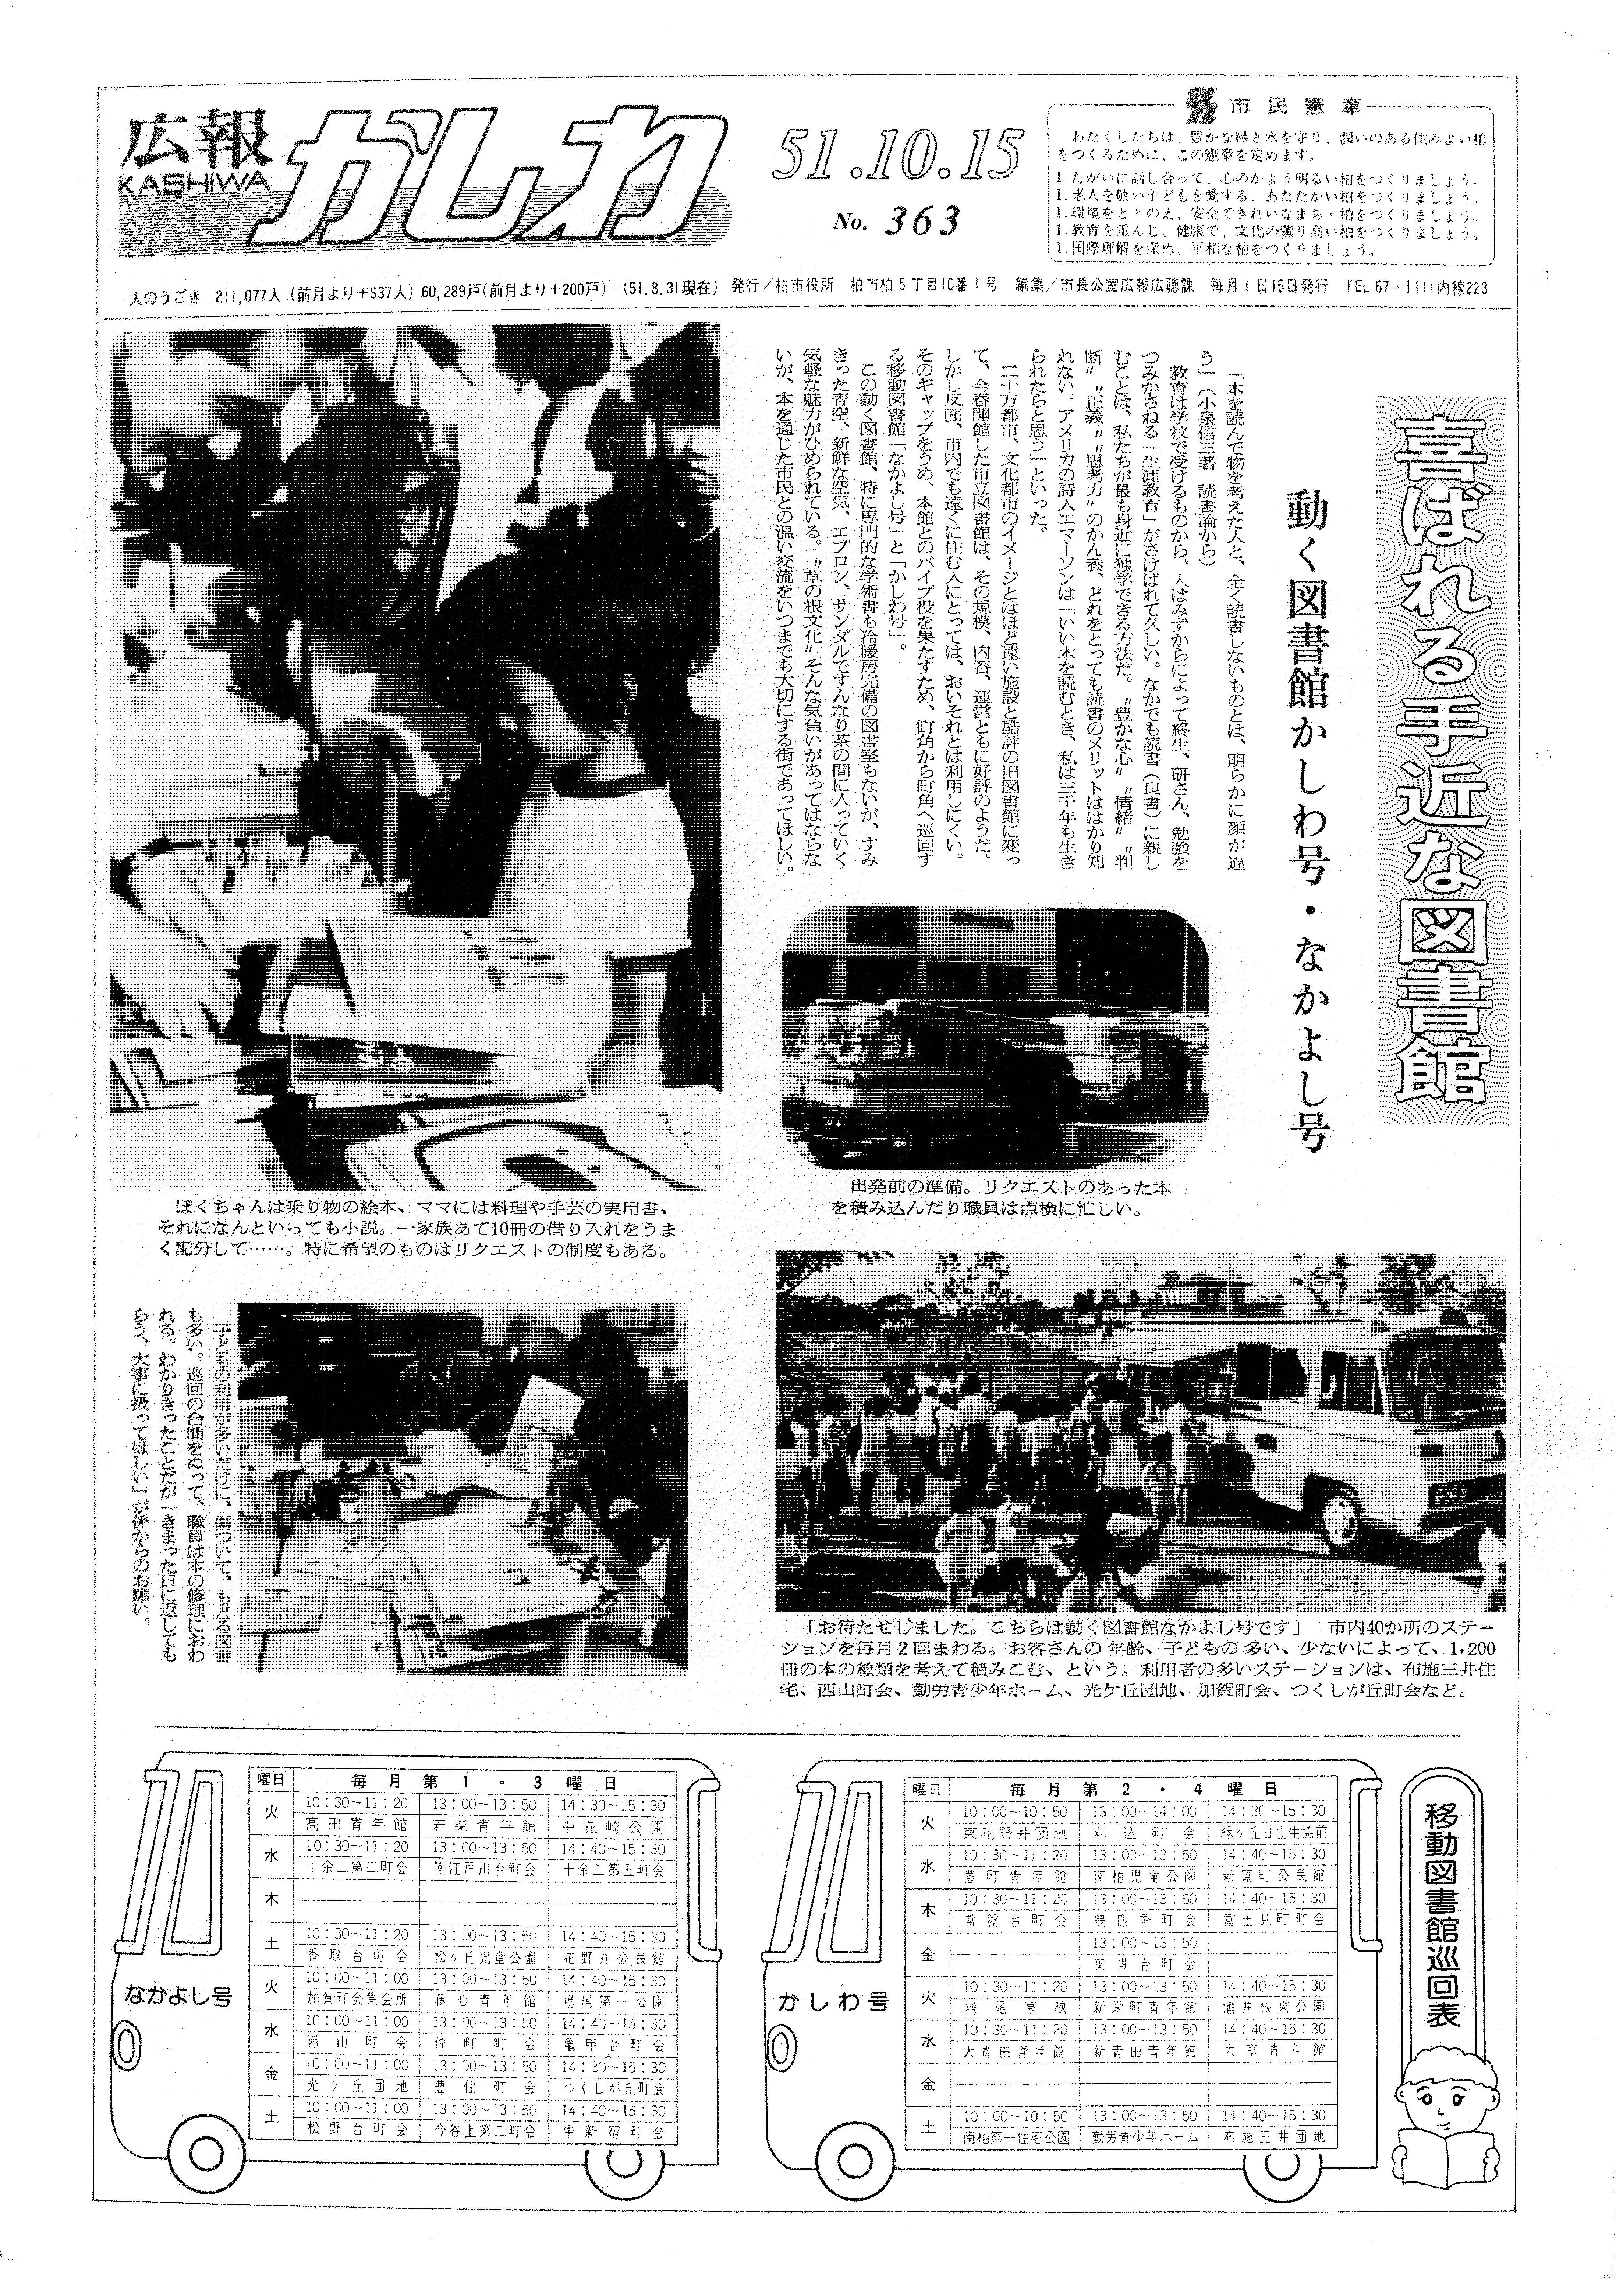 広報かしわ　昭和51年10月15日発行　363号